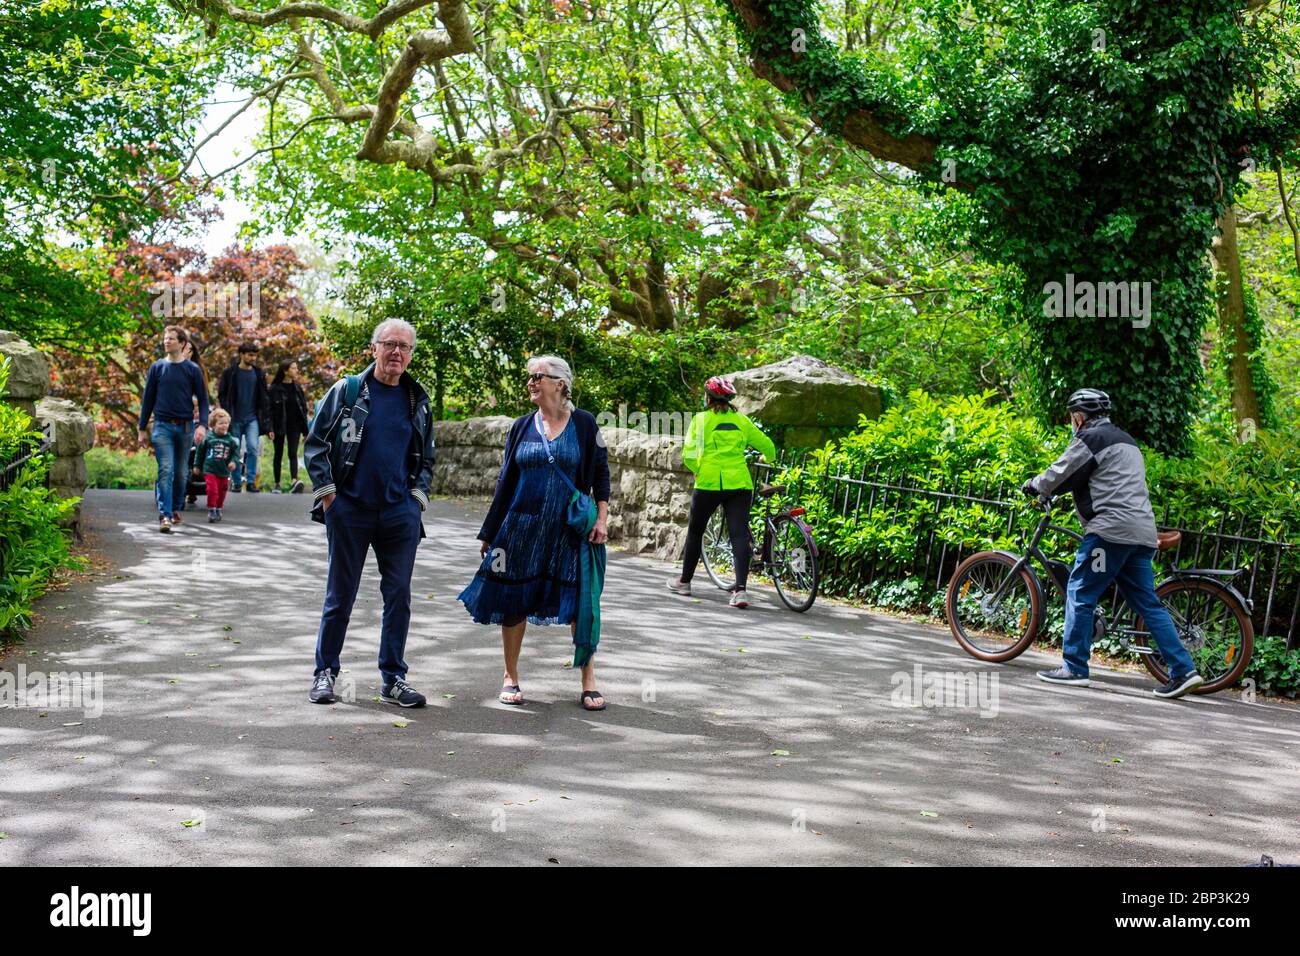 Menschen genießen Sonntagspaziergang im St. Stephen Green Park während der Pandemie. Besucher erinnerten daran, die Covid-19-Regel der sozialen Distanzierung im öffentlichen Raum einzuhalten. Stockfoto